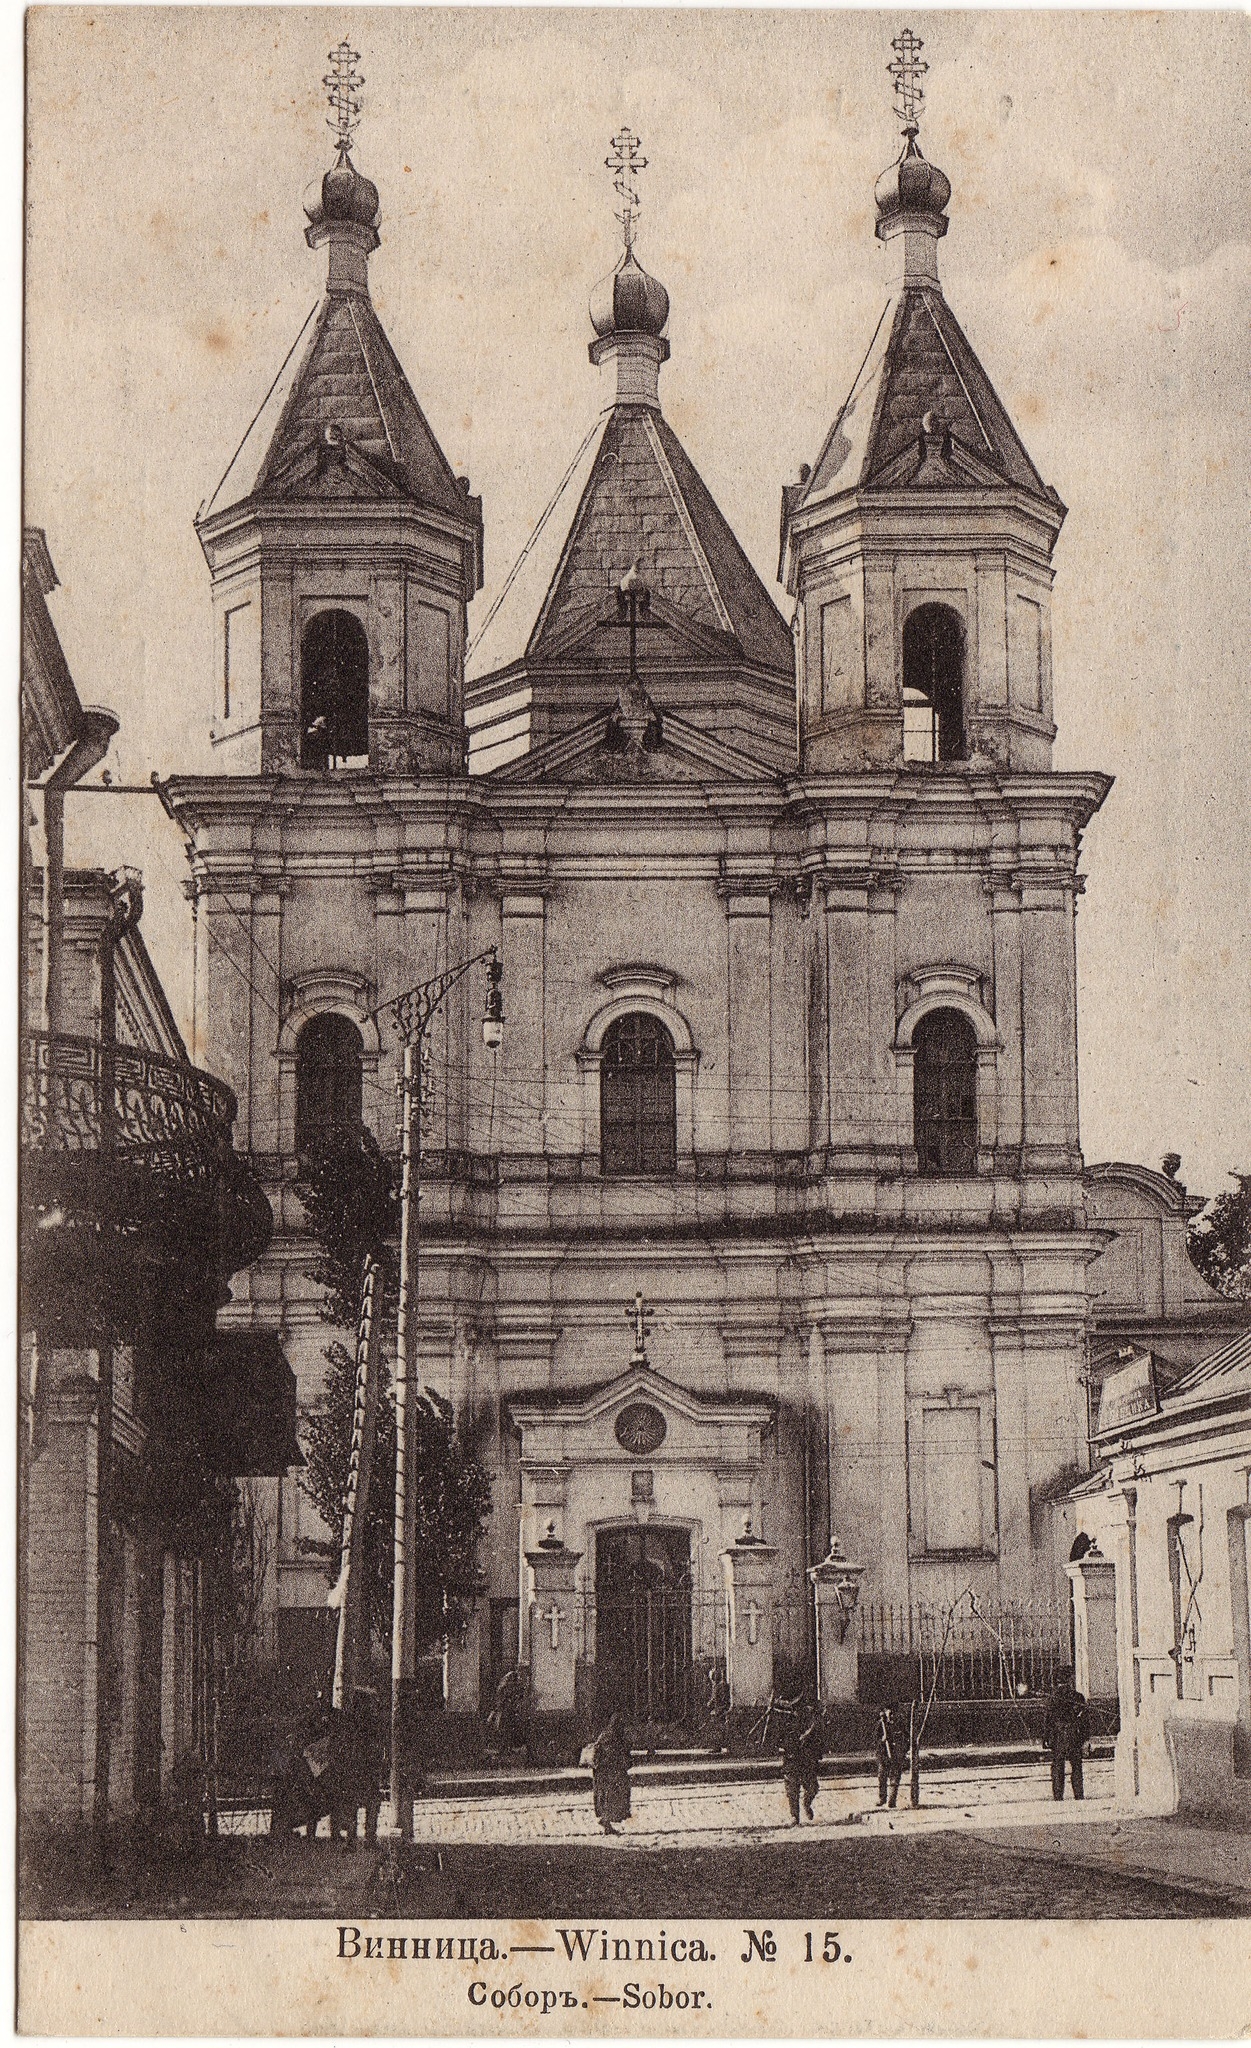 Спасо-Преображенський собор у Вінниці - історія храму, побудованого майже три століття тому